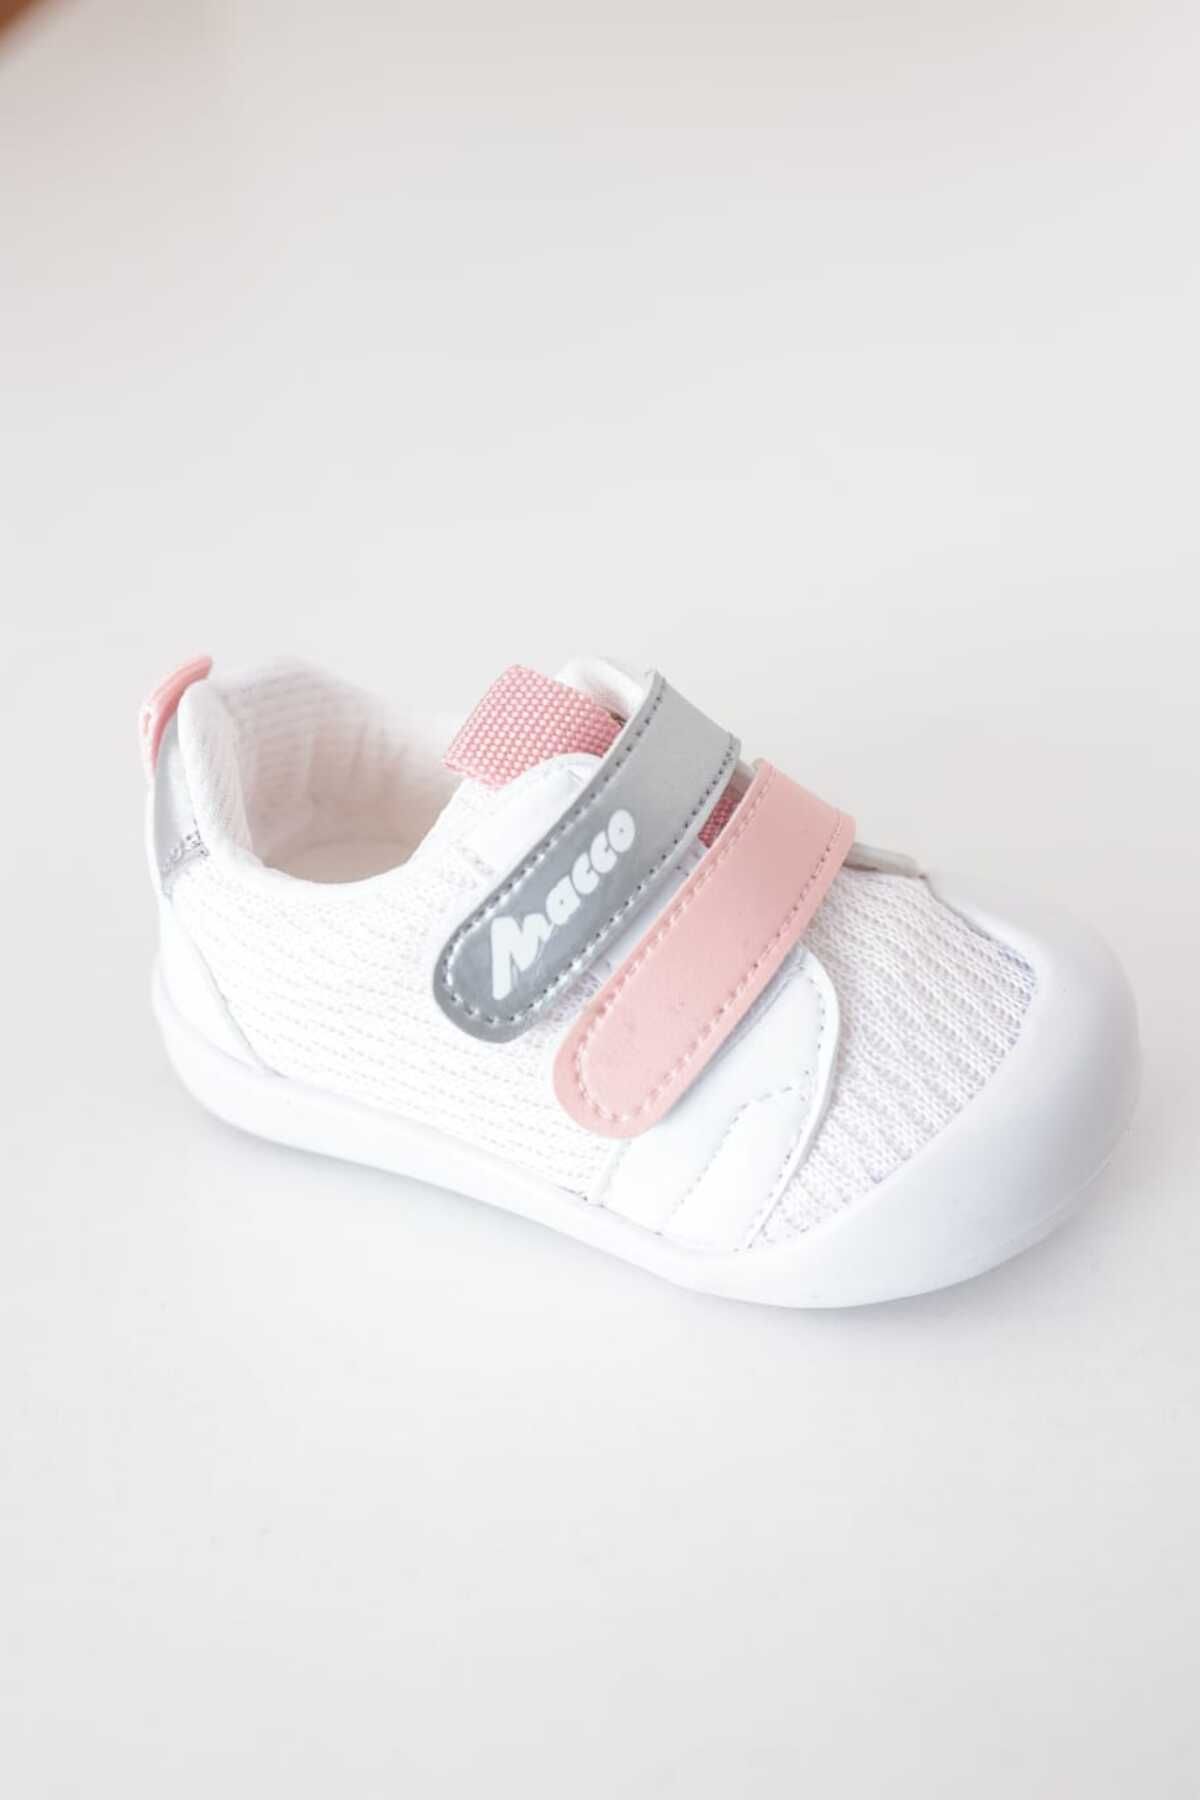 macco shoes Ortopedik İlk Adım Kız Bebek Erkek Bebek Unisex Çocuk Ayakkabısı